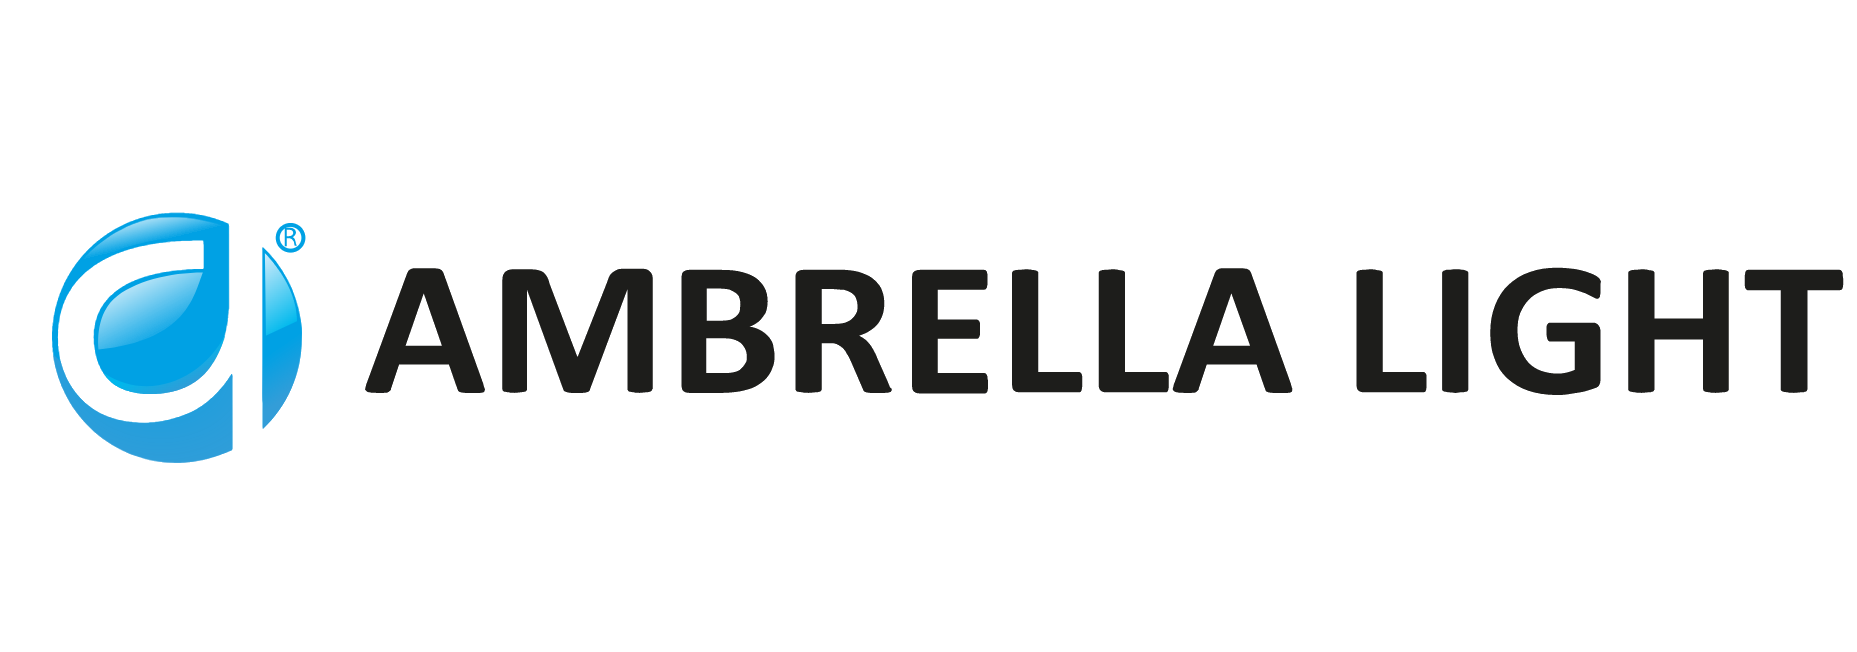 Ambrella.by